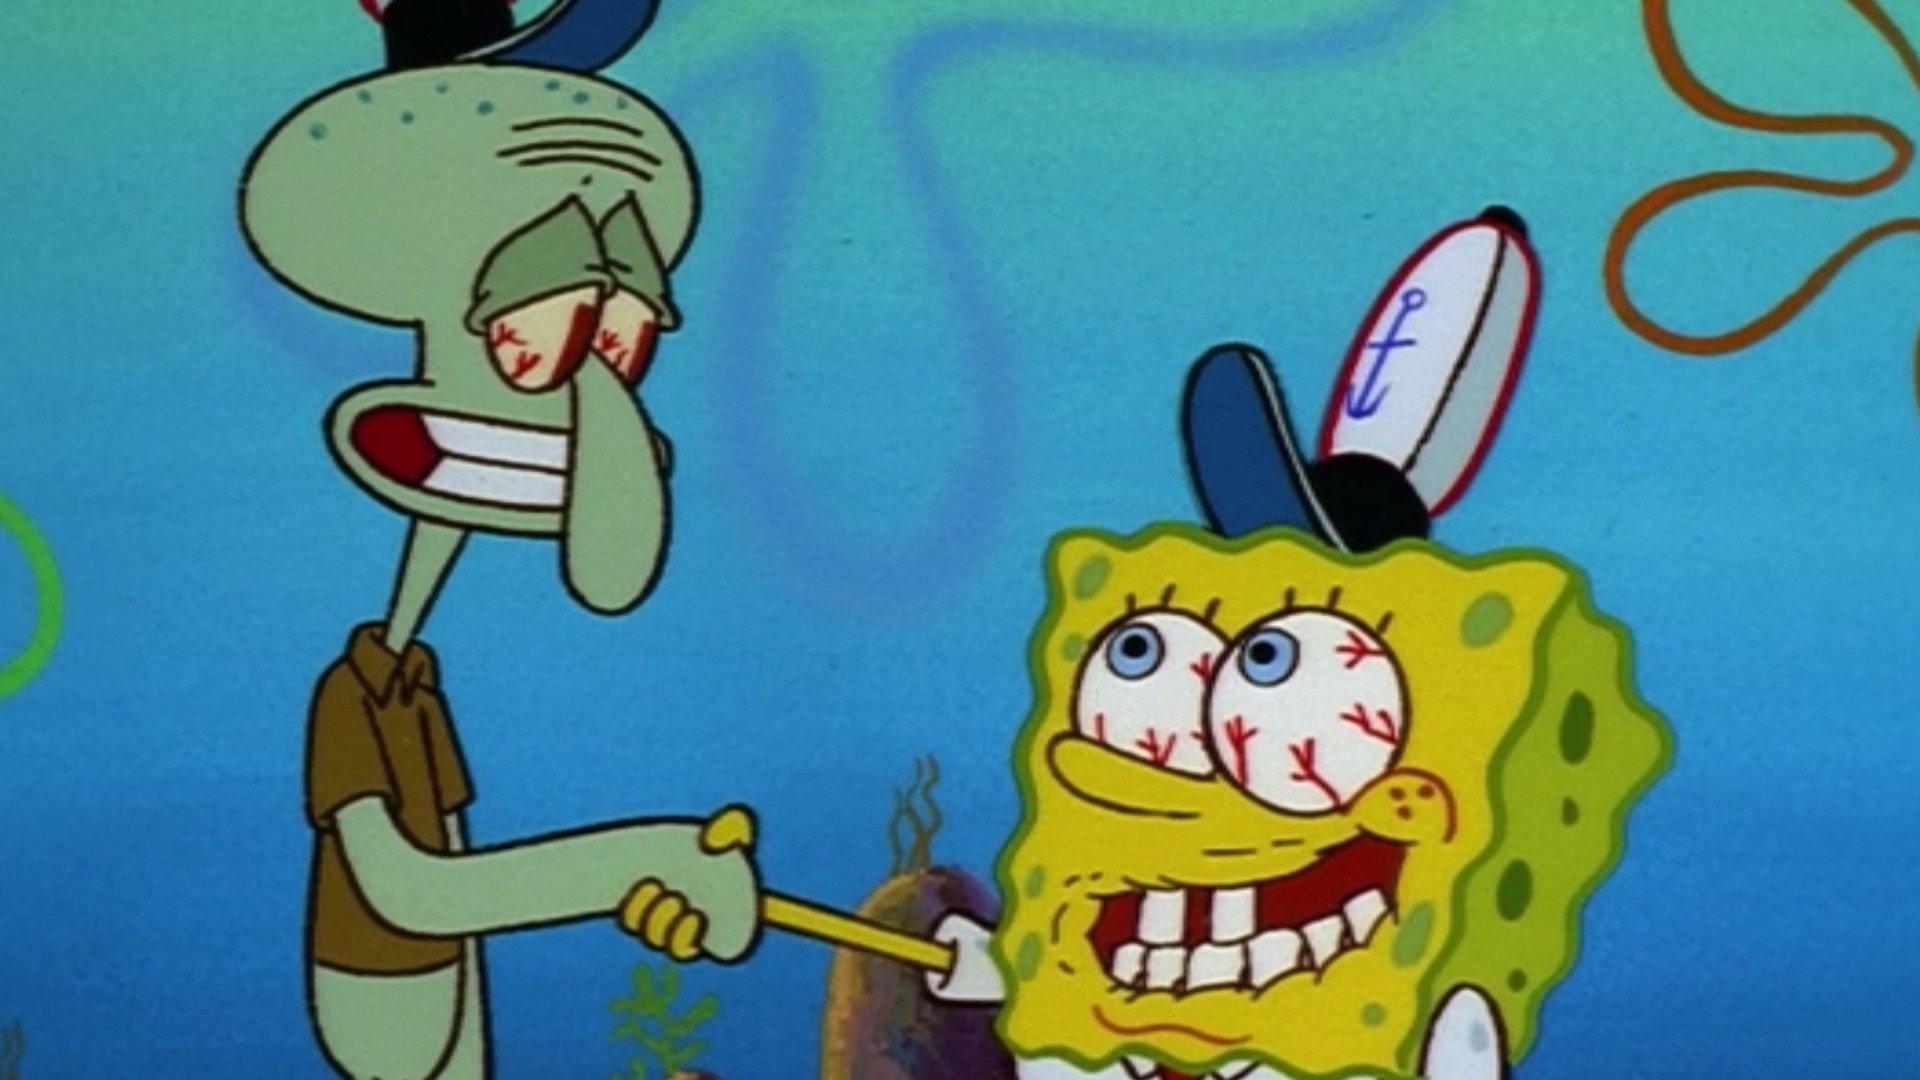 the chaperone spongebob episode